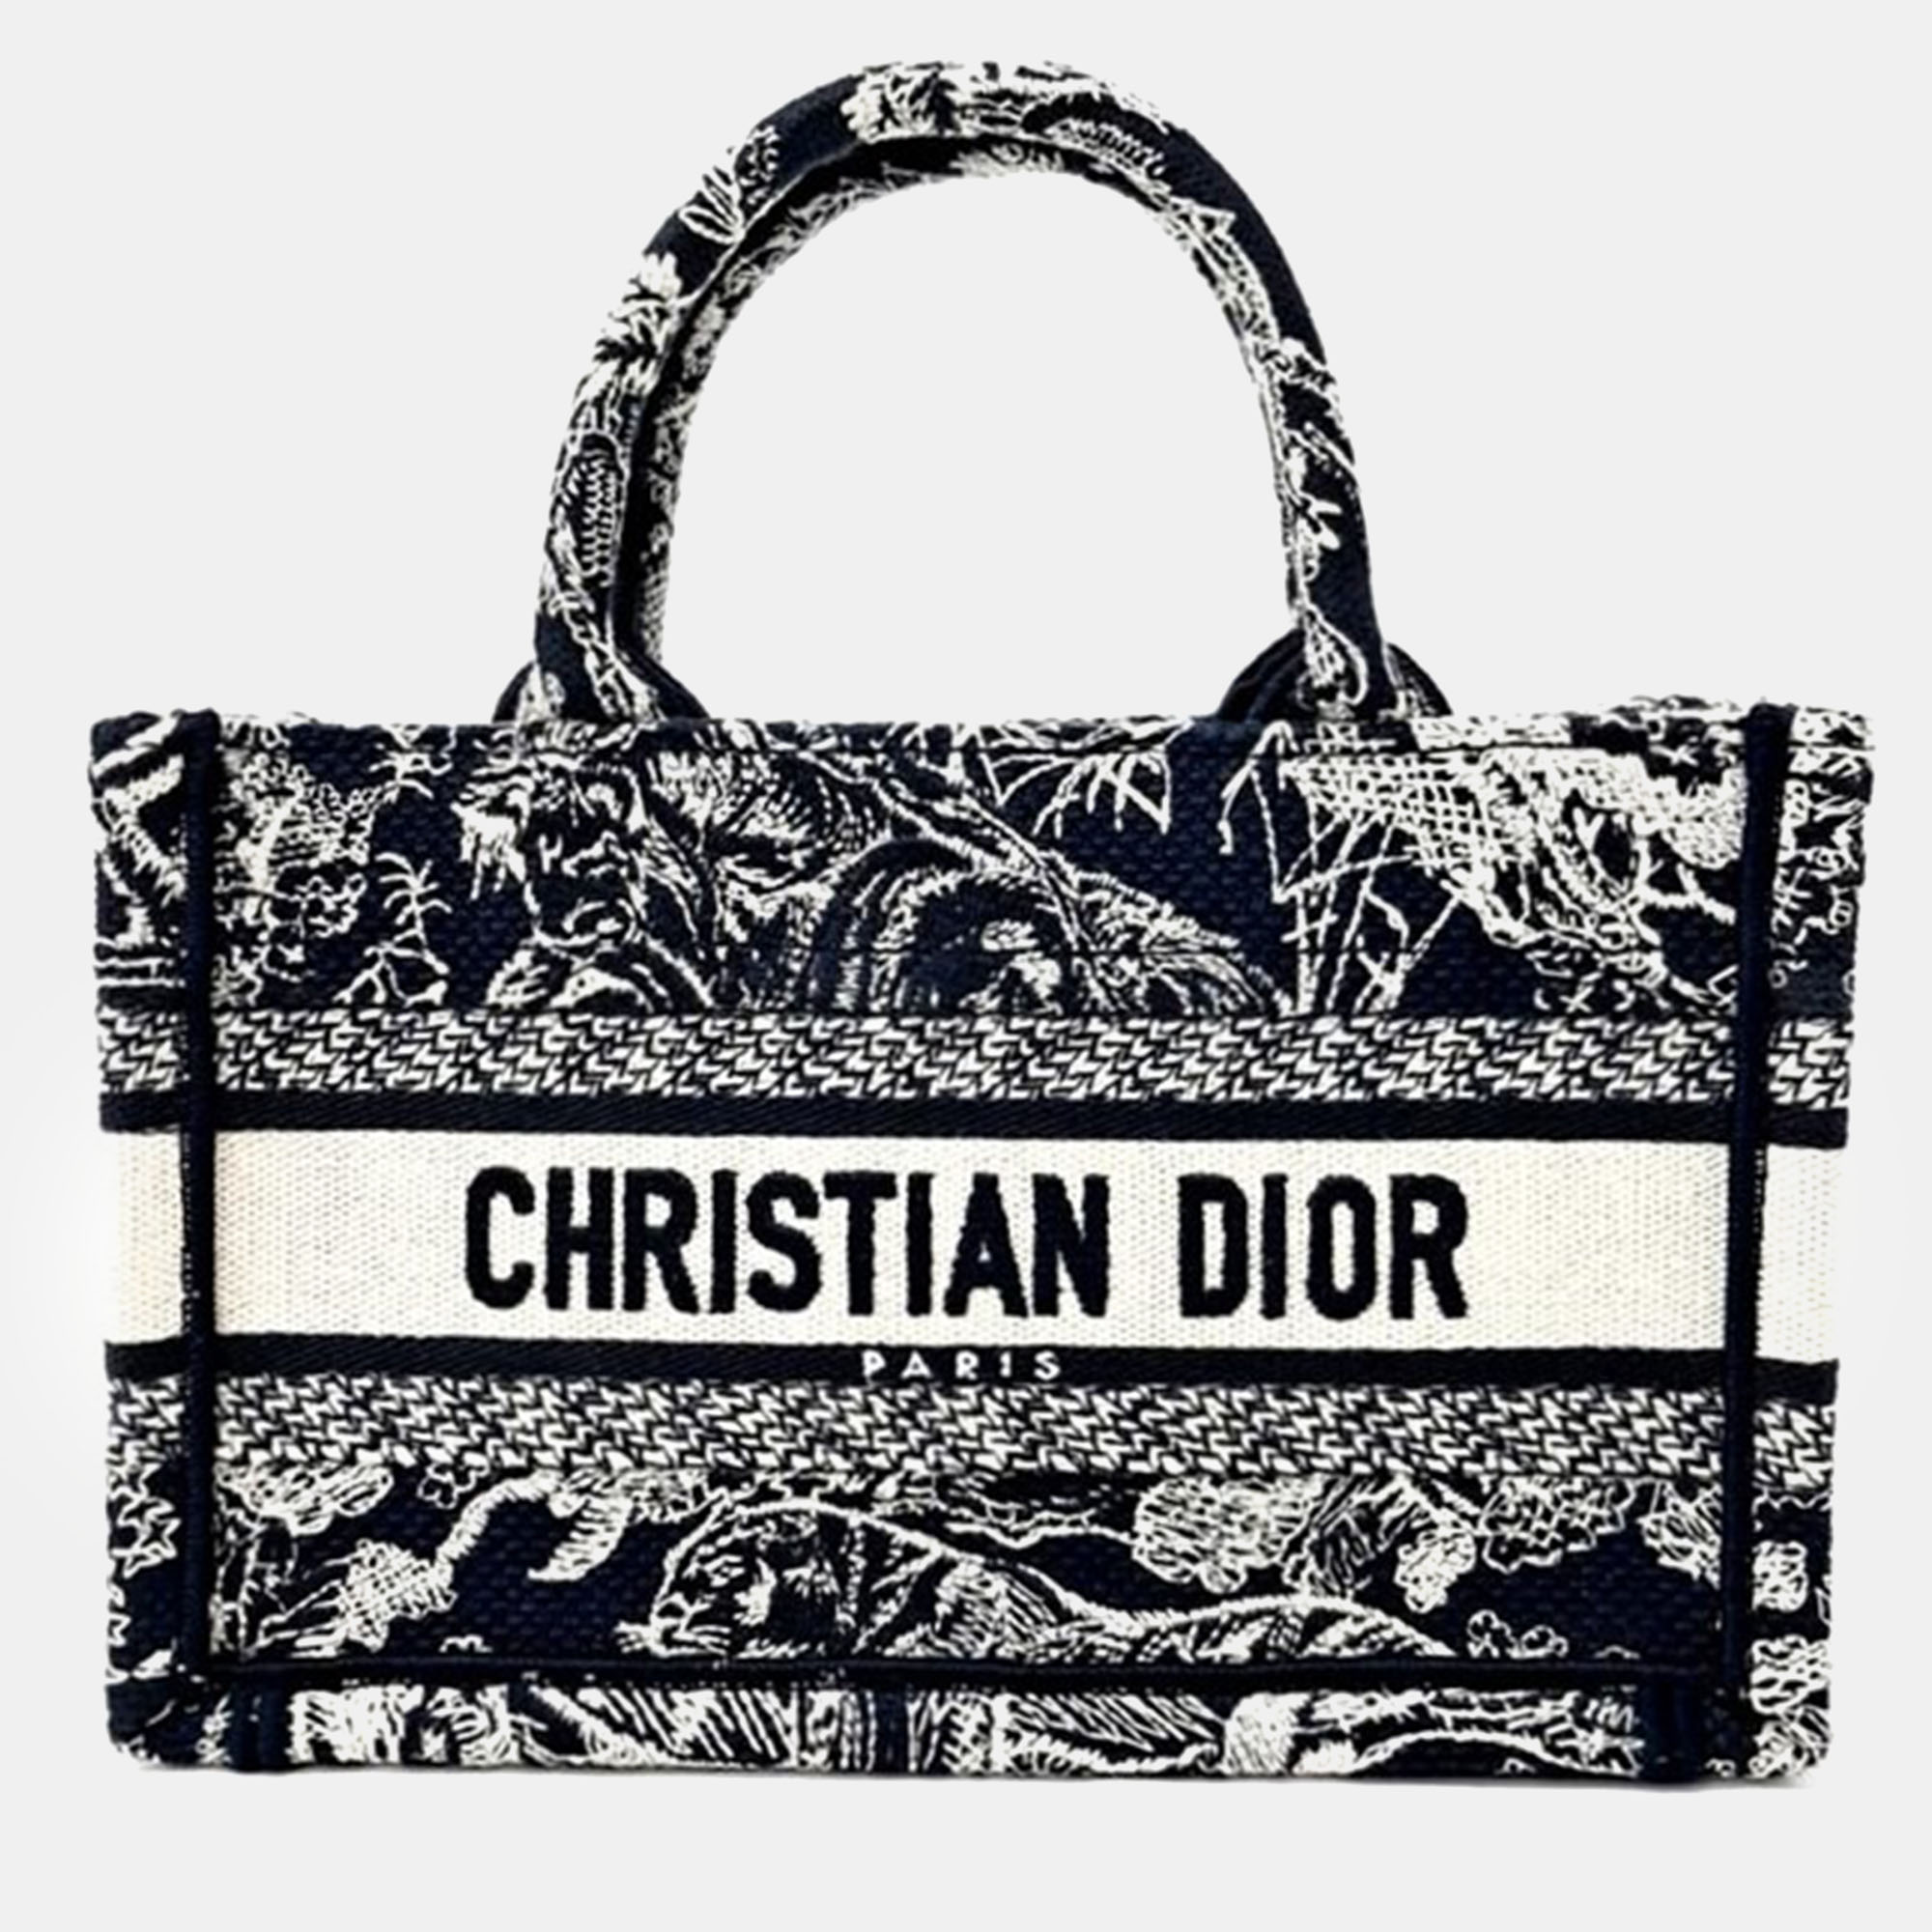 Christian dior book tote mini strap bag